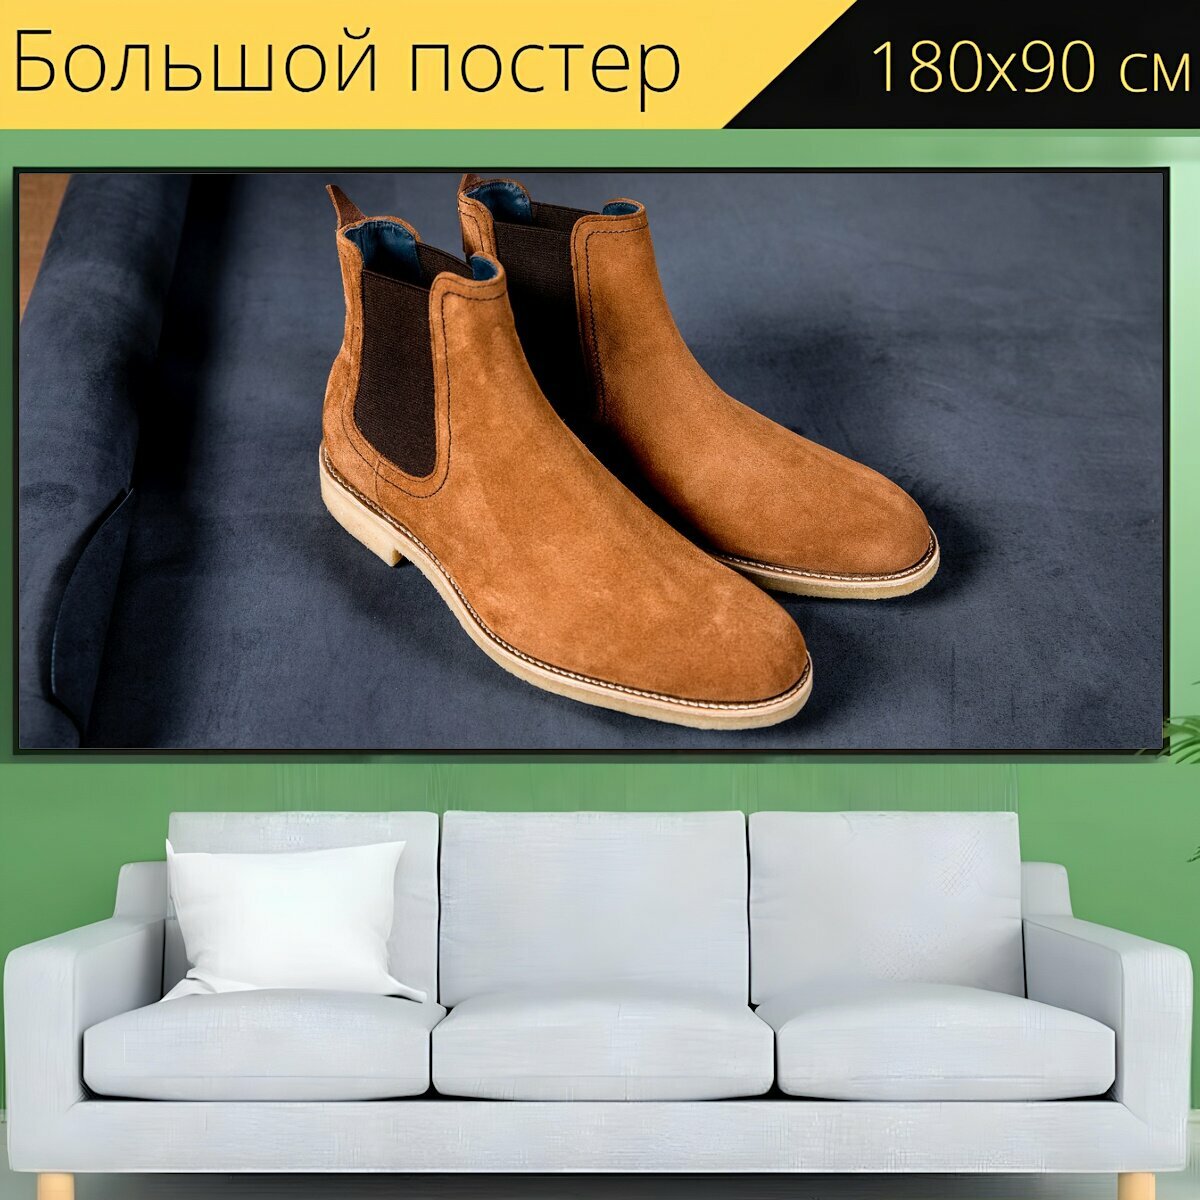 Большой постер "Ботинки челси для мужчин, мужские кожаные ботинки челси, мужские ботинки" 180 x 90 см. для интерьера